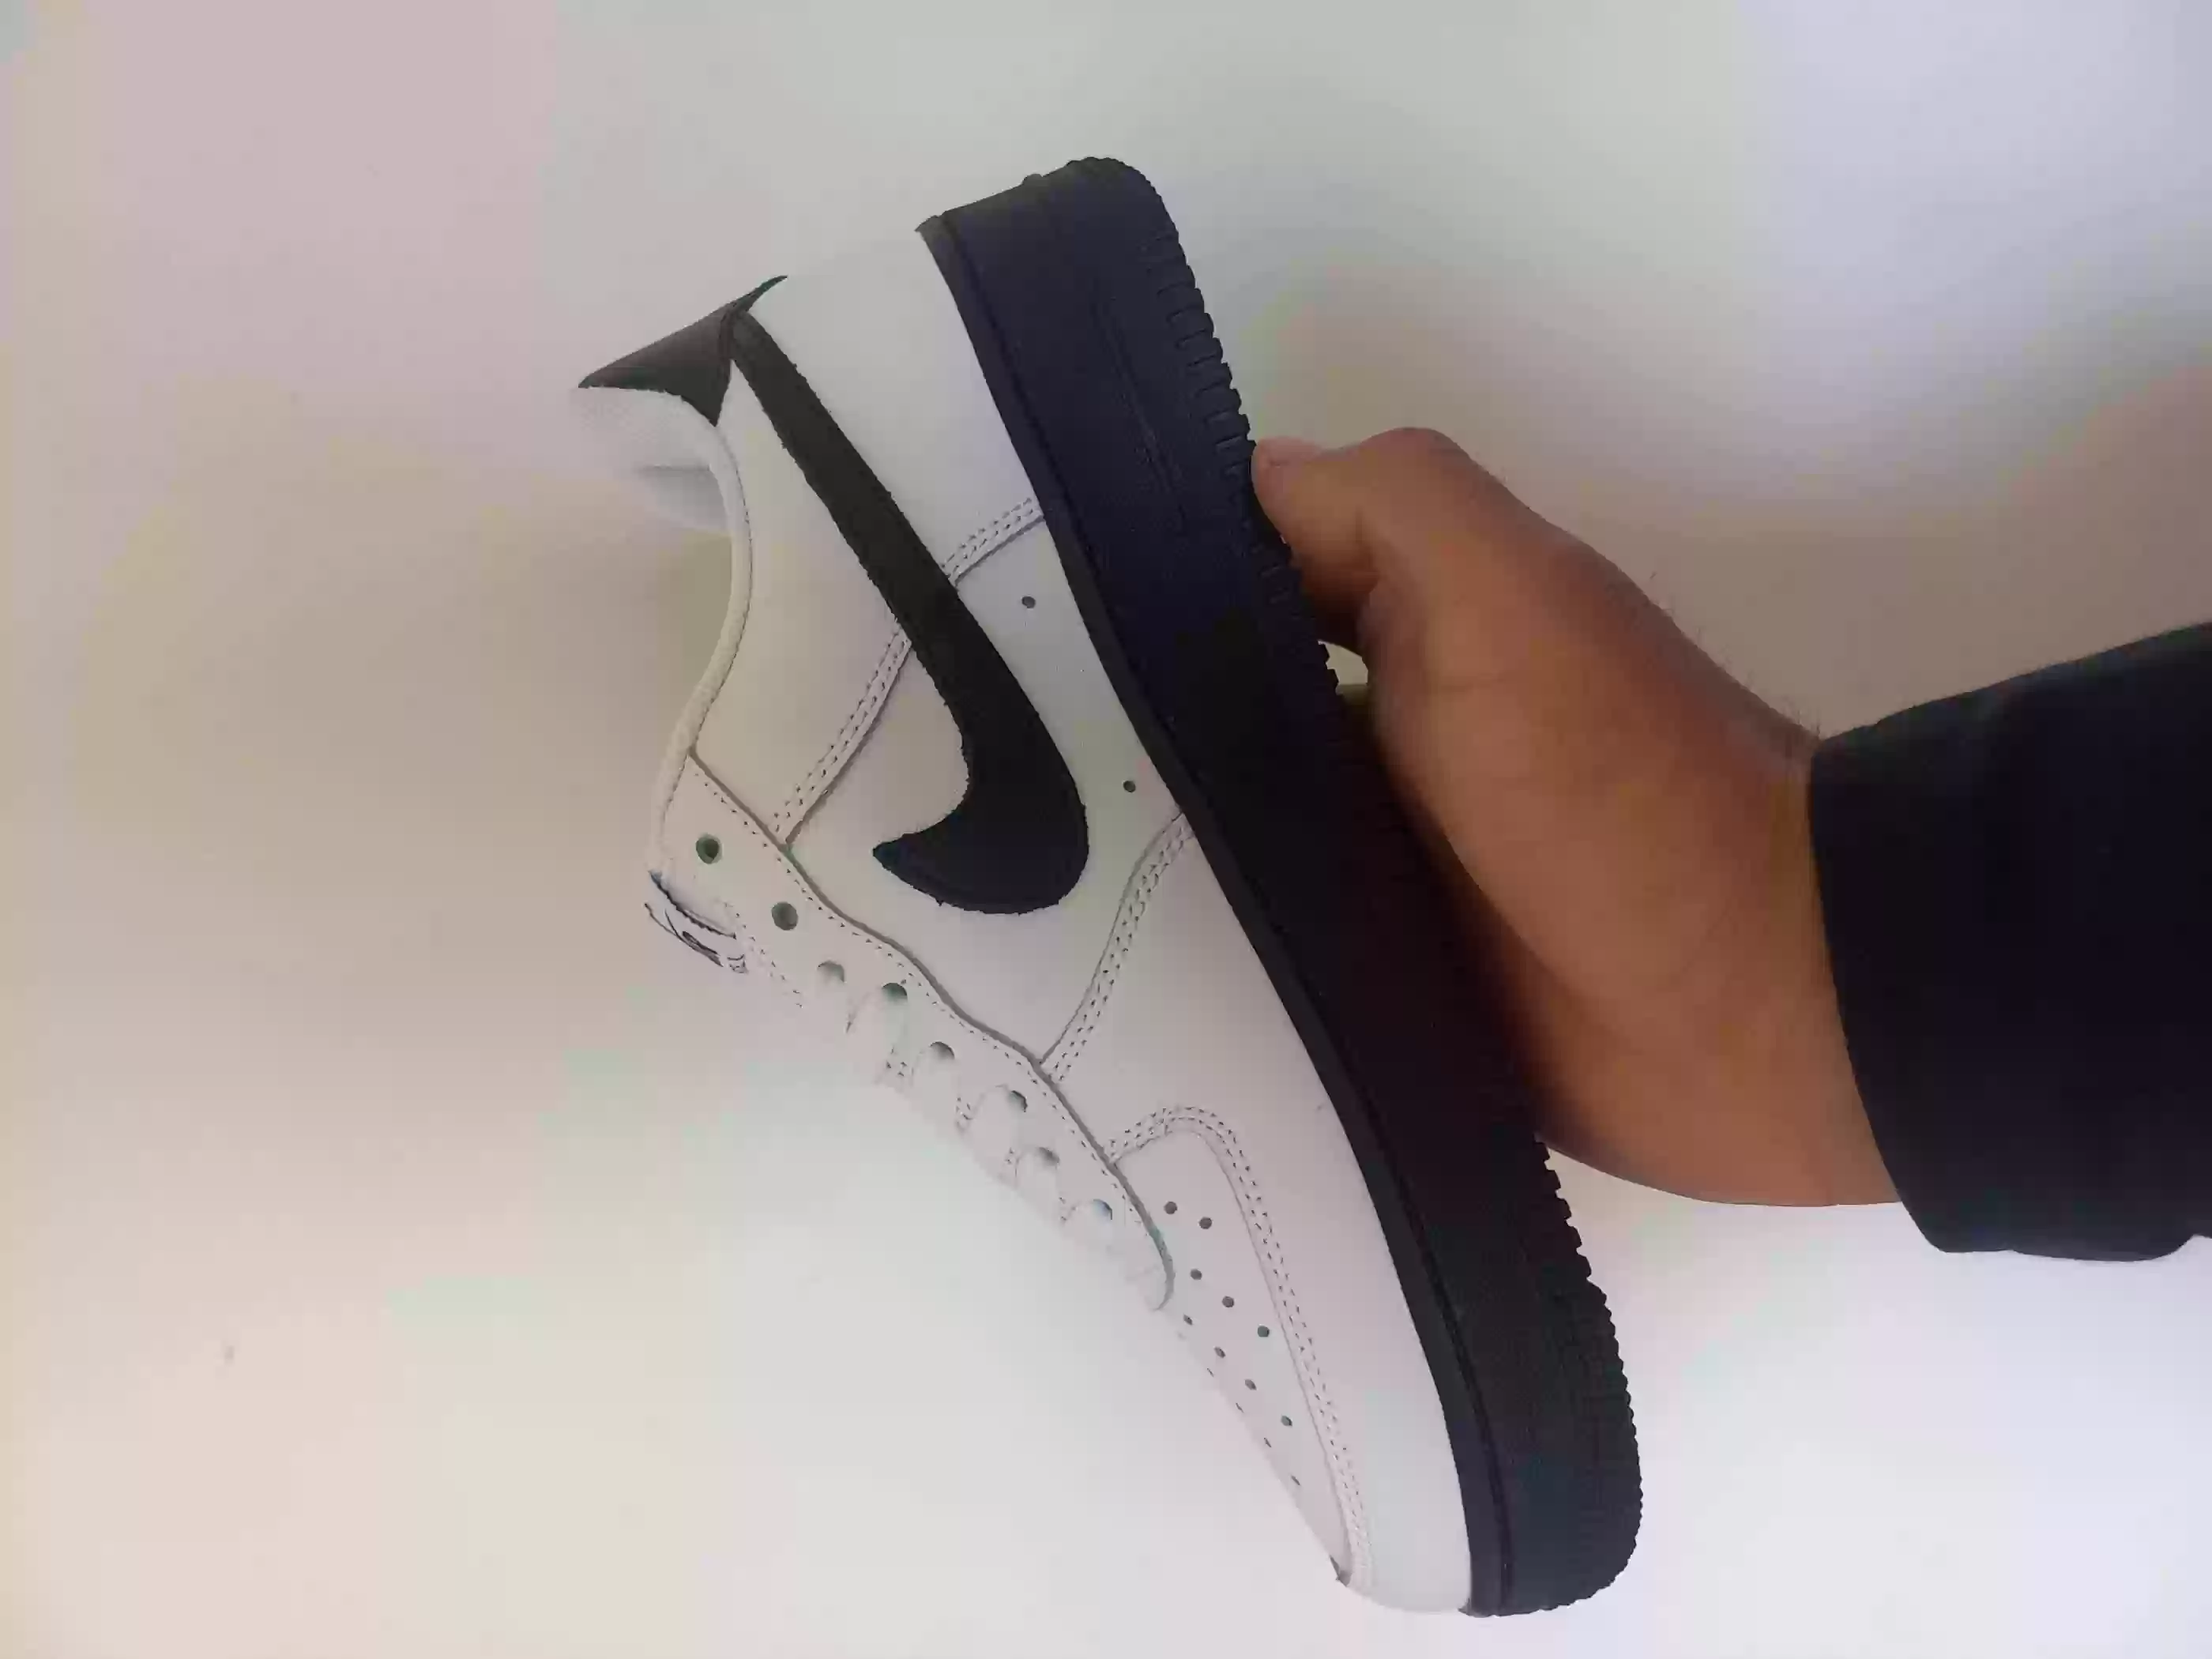 кроссовки Nike